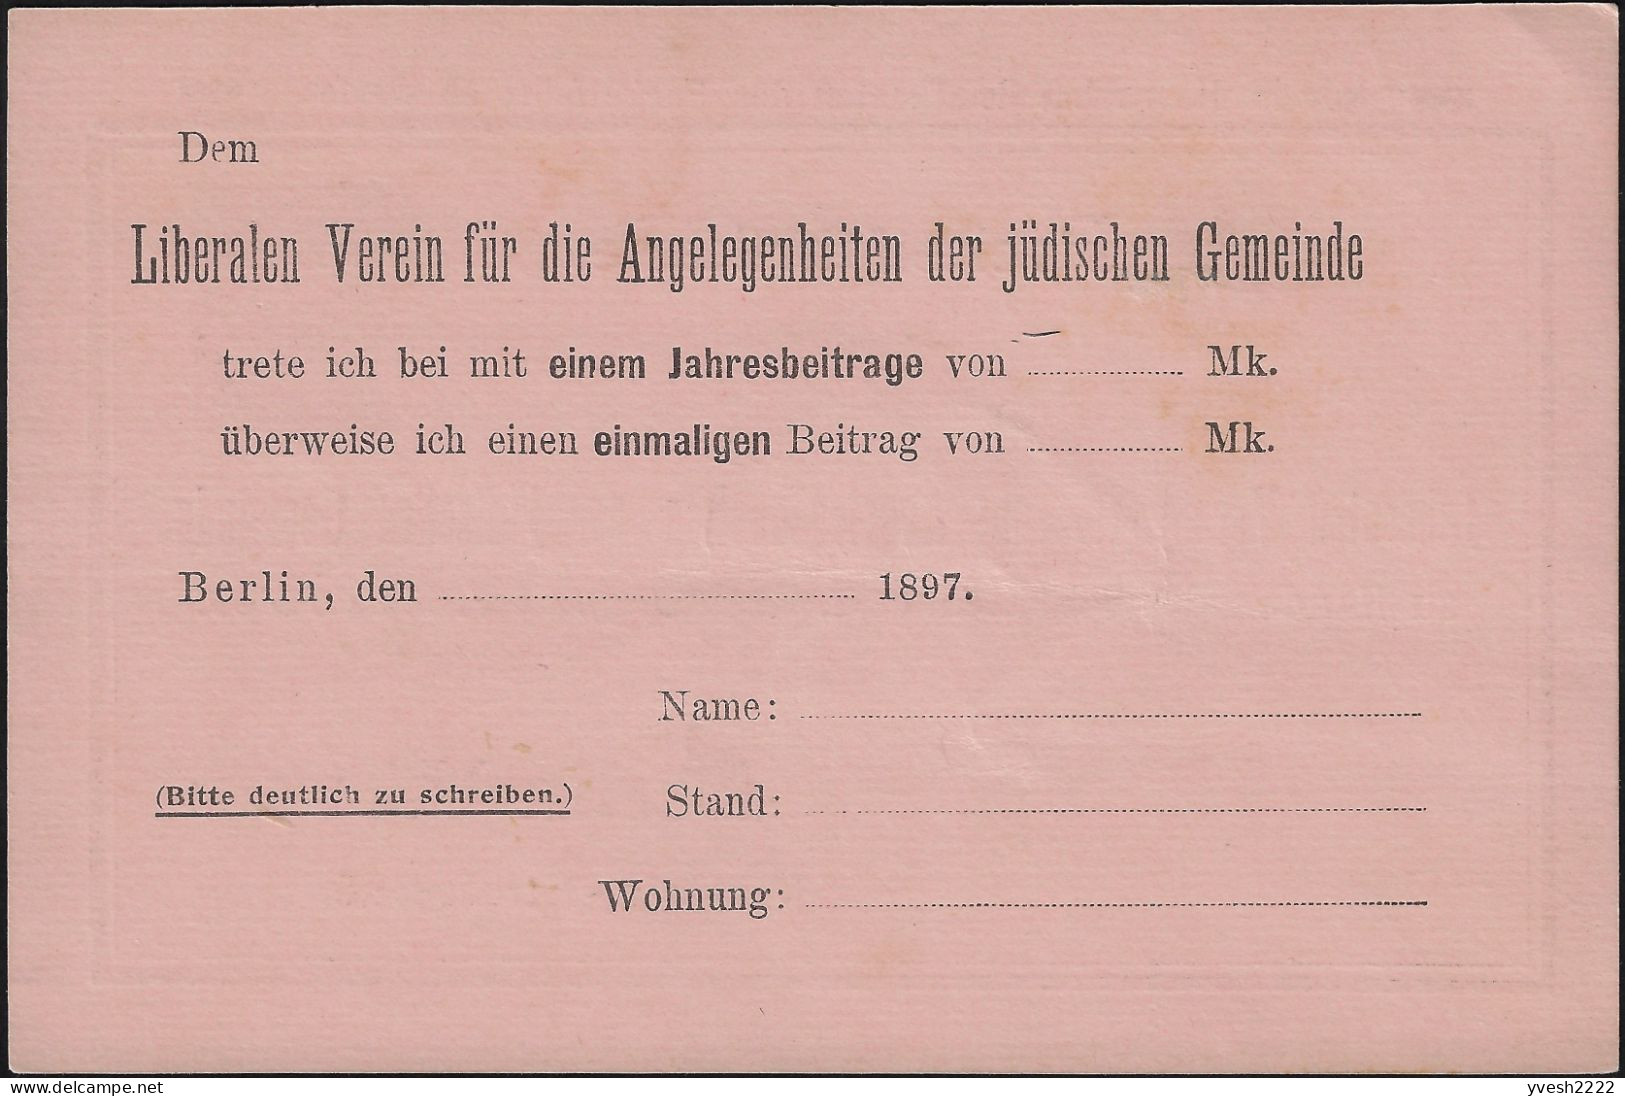 Berlin 1886 1888, 1897. 3 entiers postaux poste privée. Collecte de fonds pour les pauvres de la communauté juive locale